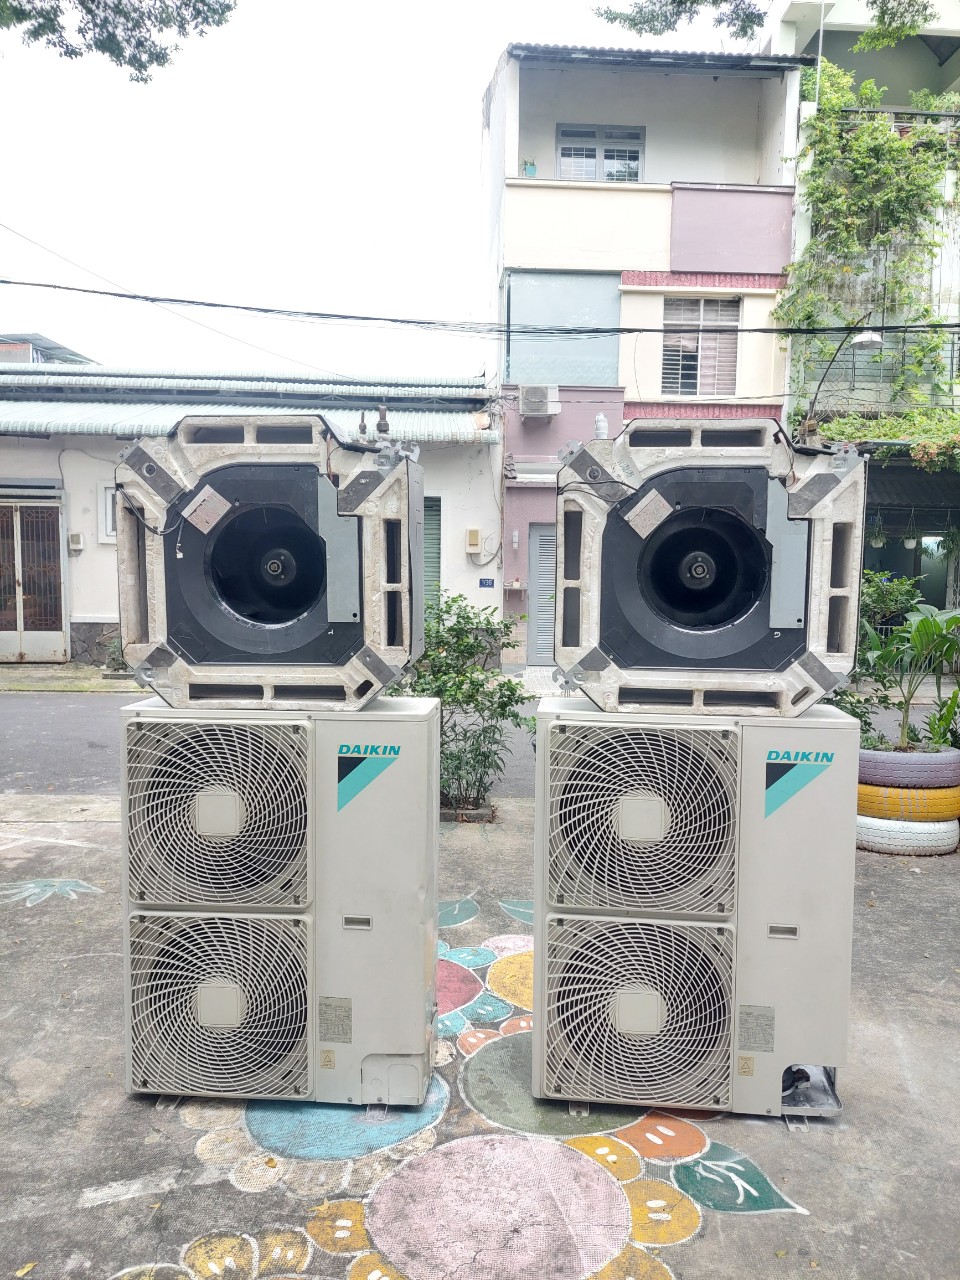 CHÚNG TÔI CHUYÊN THU MUA MÁY LẠNH CÁC LOẠI: Thanh lý - bán máy lạnh cũ ở Long Khánh